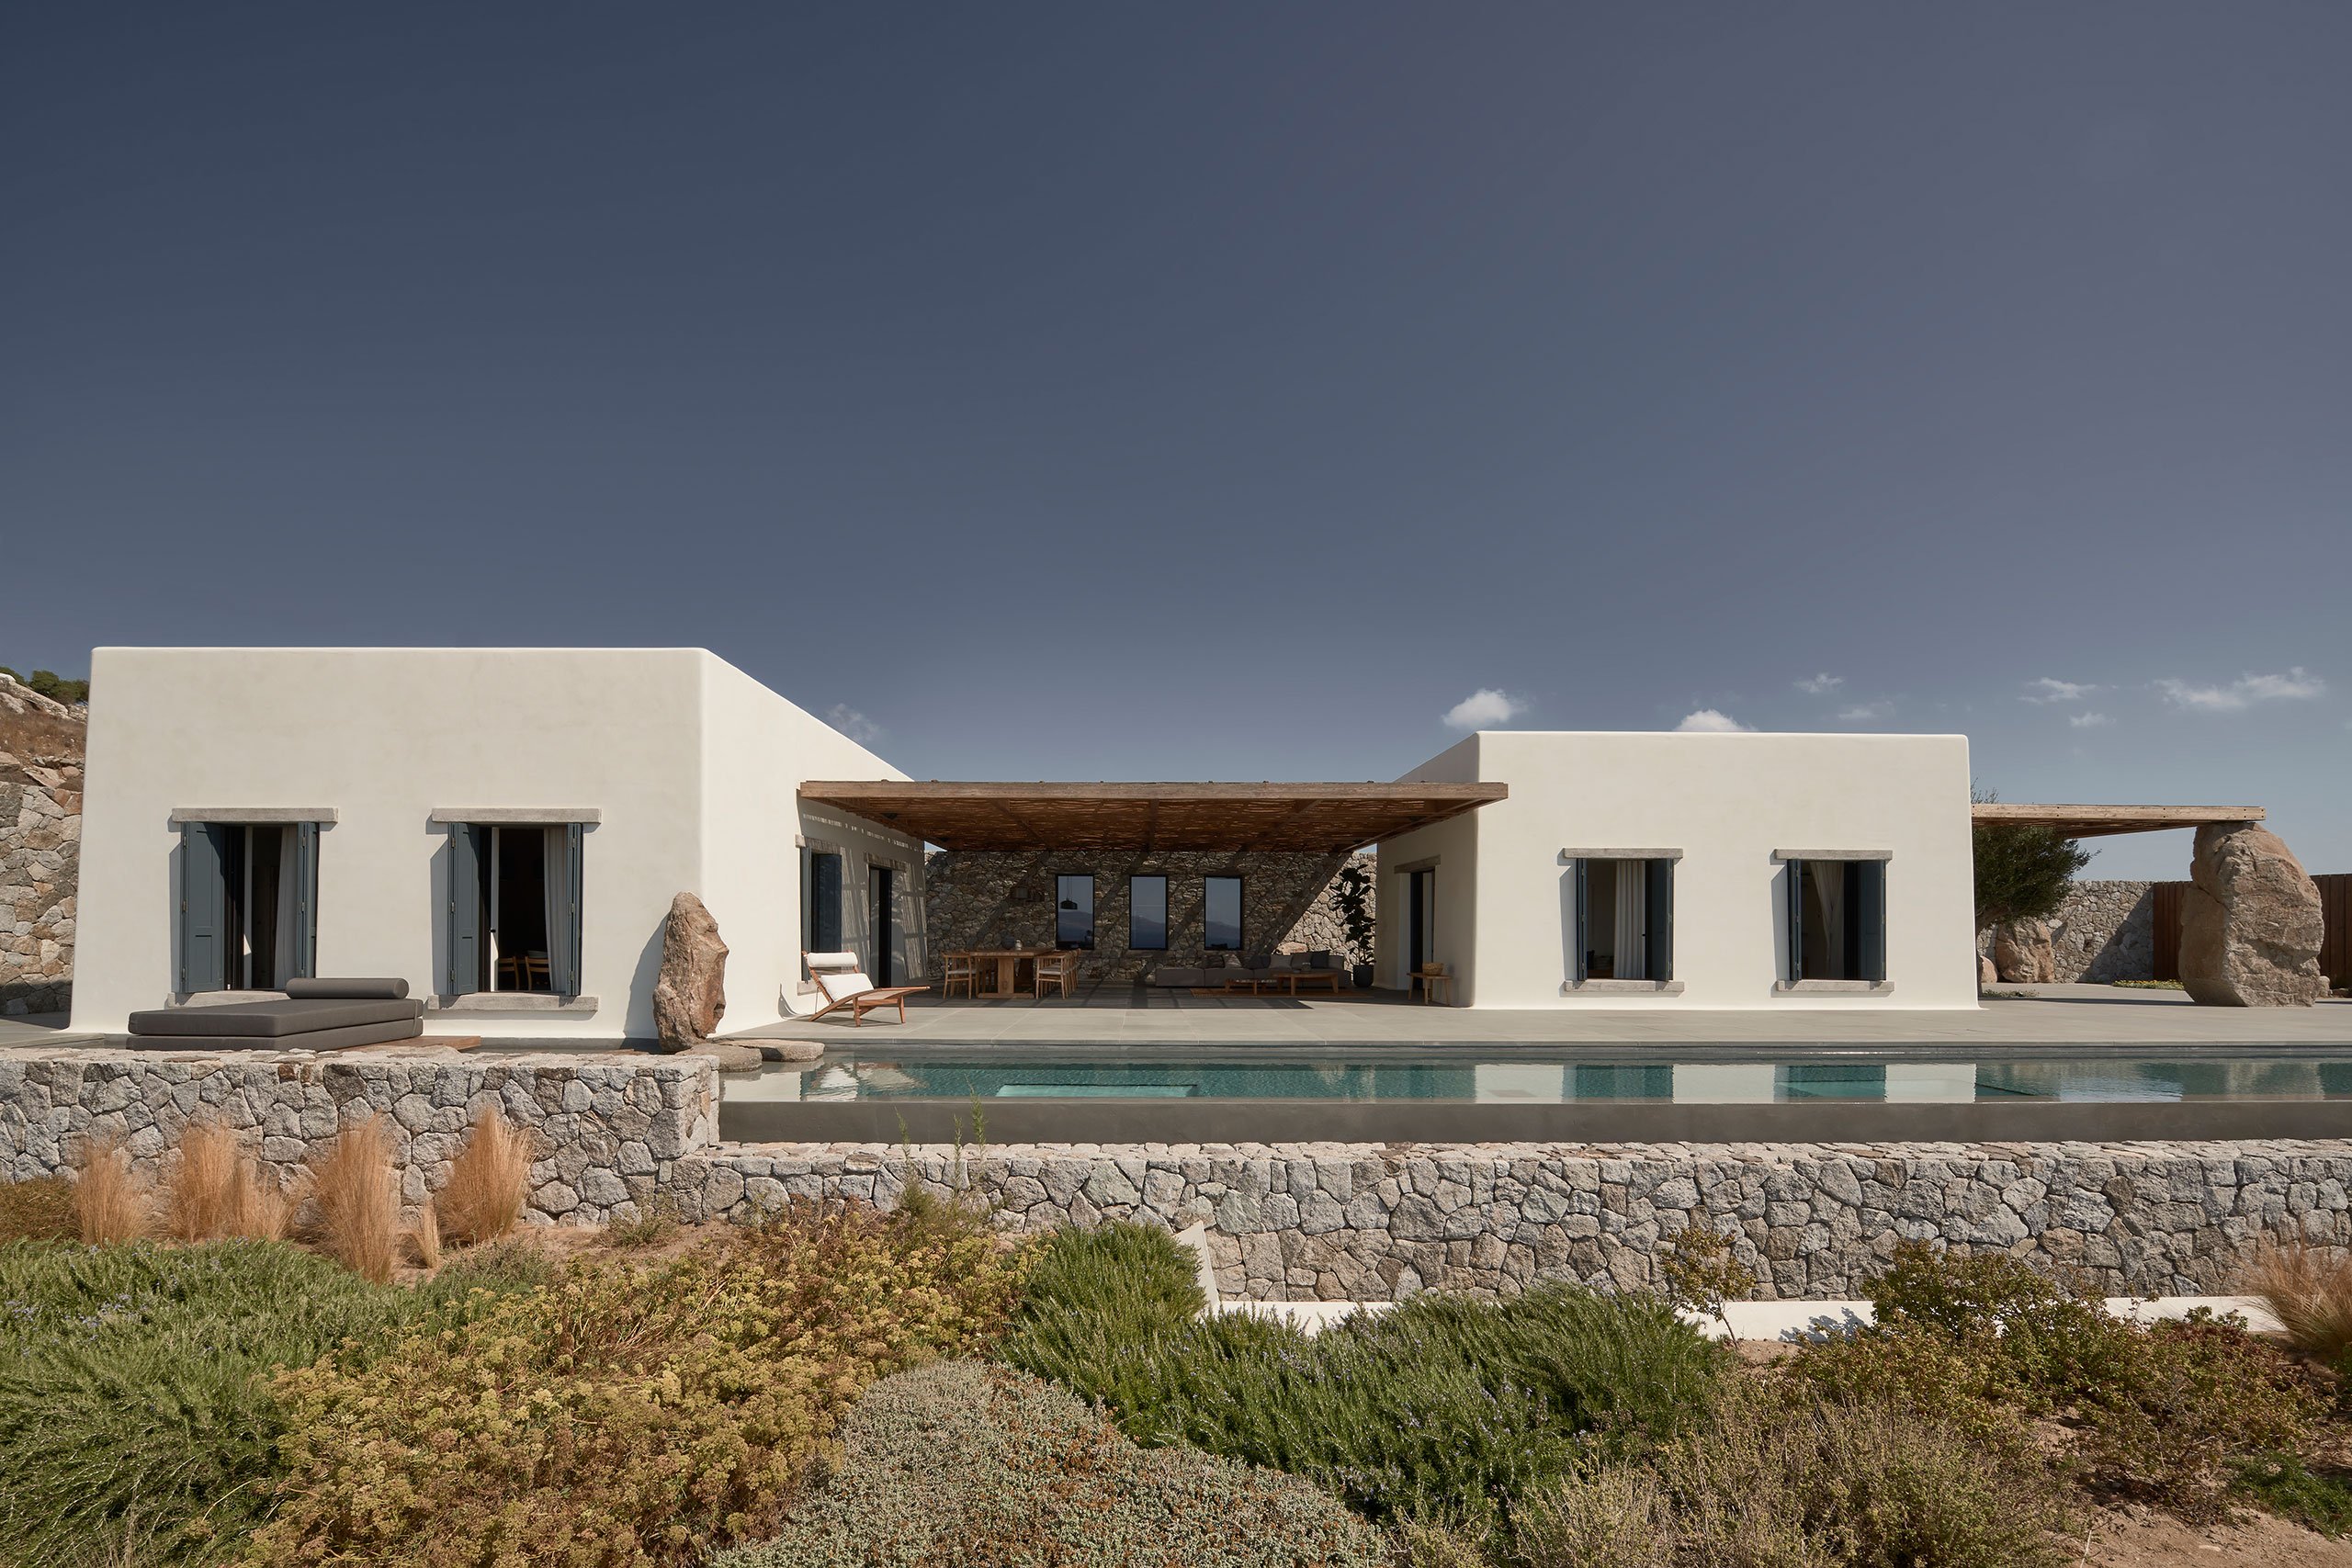 Villa Mandra in Mykonos by K-Studio.
Photography by Claus Brechenmacher and Reiner Baumann.